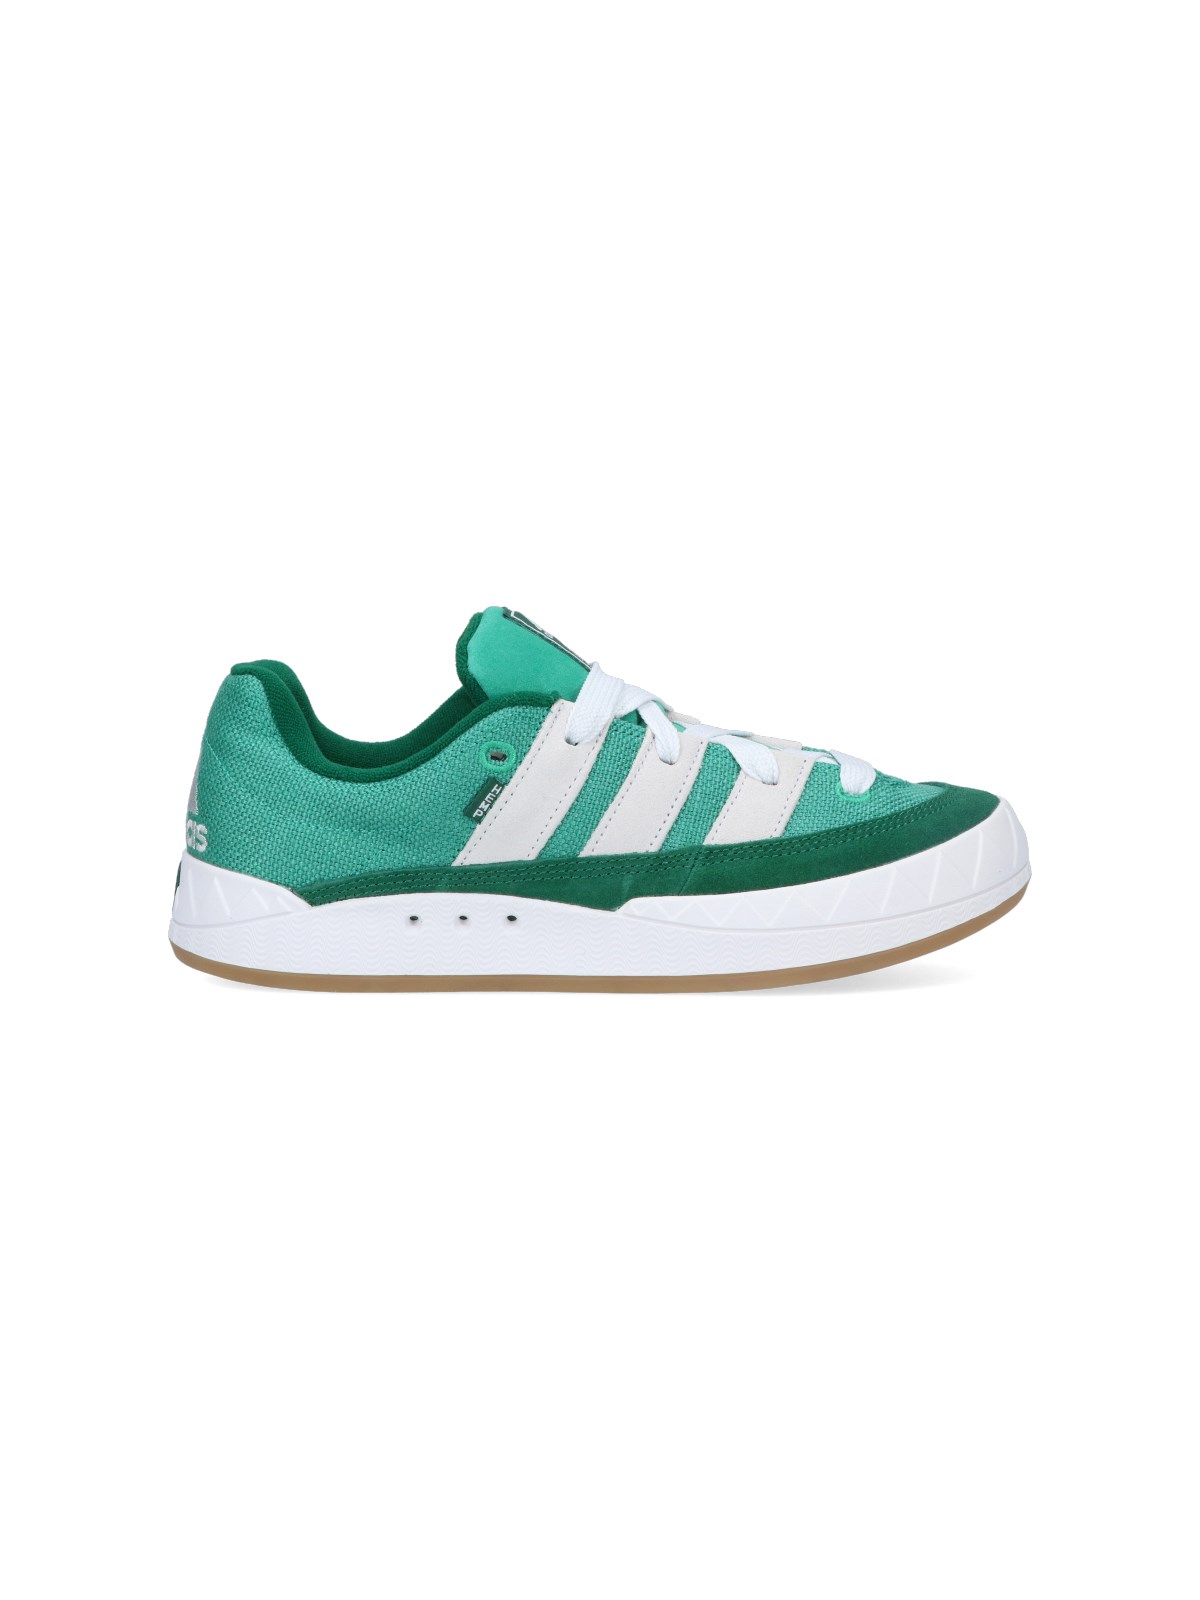 Adidas Originals Adimatic Sneakers In Green